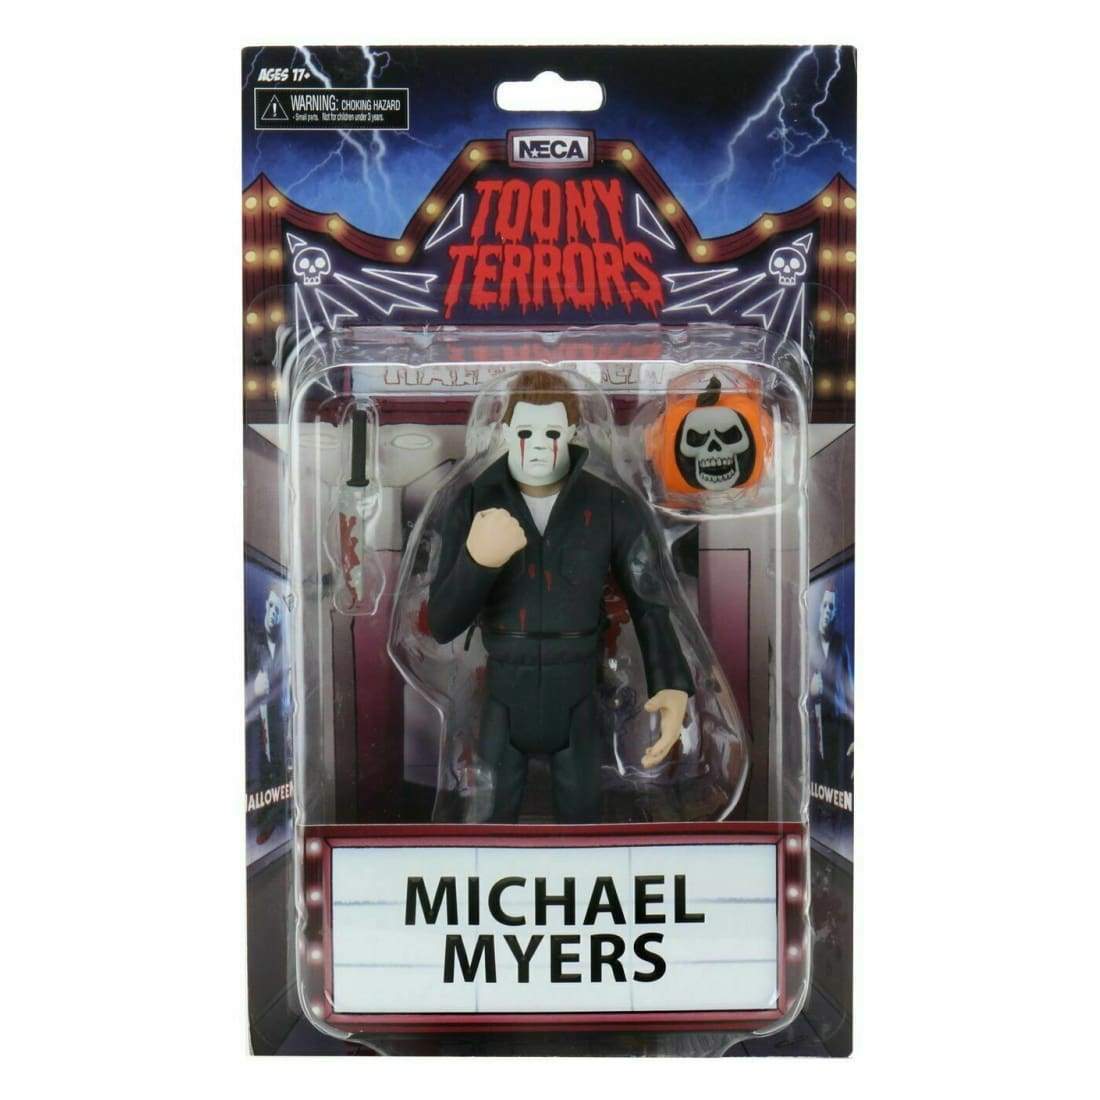 Toony Terrors Michael Myers.